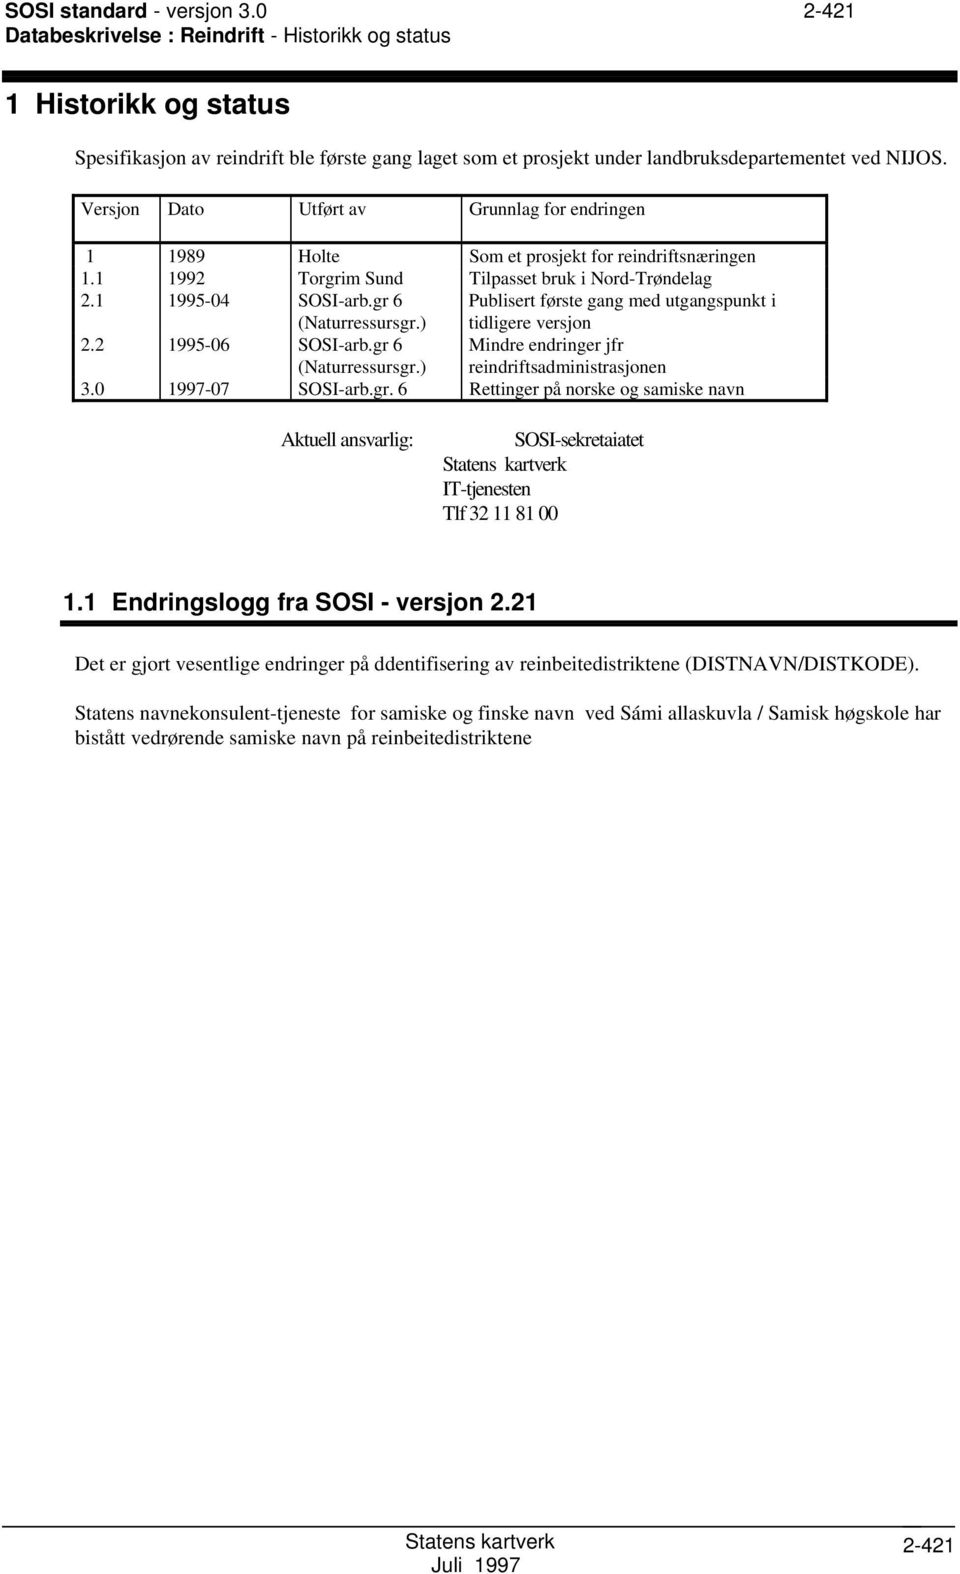 Versjon Dato Utført av Grunnlag for endringen 1 1989 Holte om et prosjekt for reindriftsnæringen 1.1 1992 Torgrim und Tilpasset bruk i Nord-Trøndelag 2.1 1995-04 OI-arb.gr 6 (Naturressursgr.